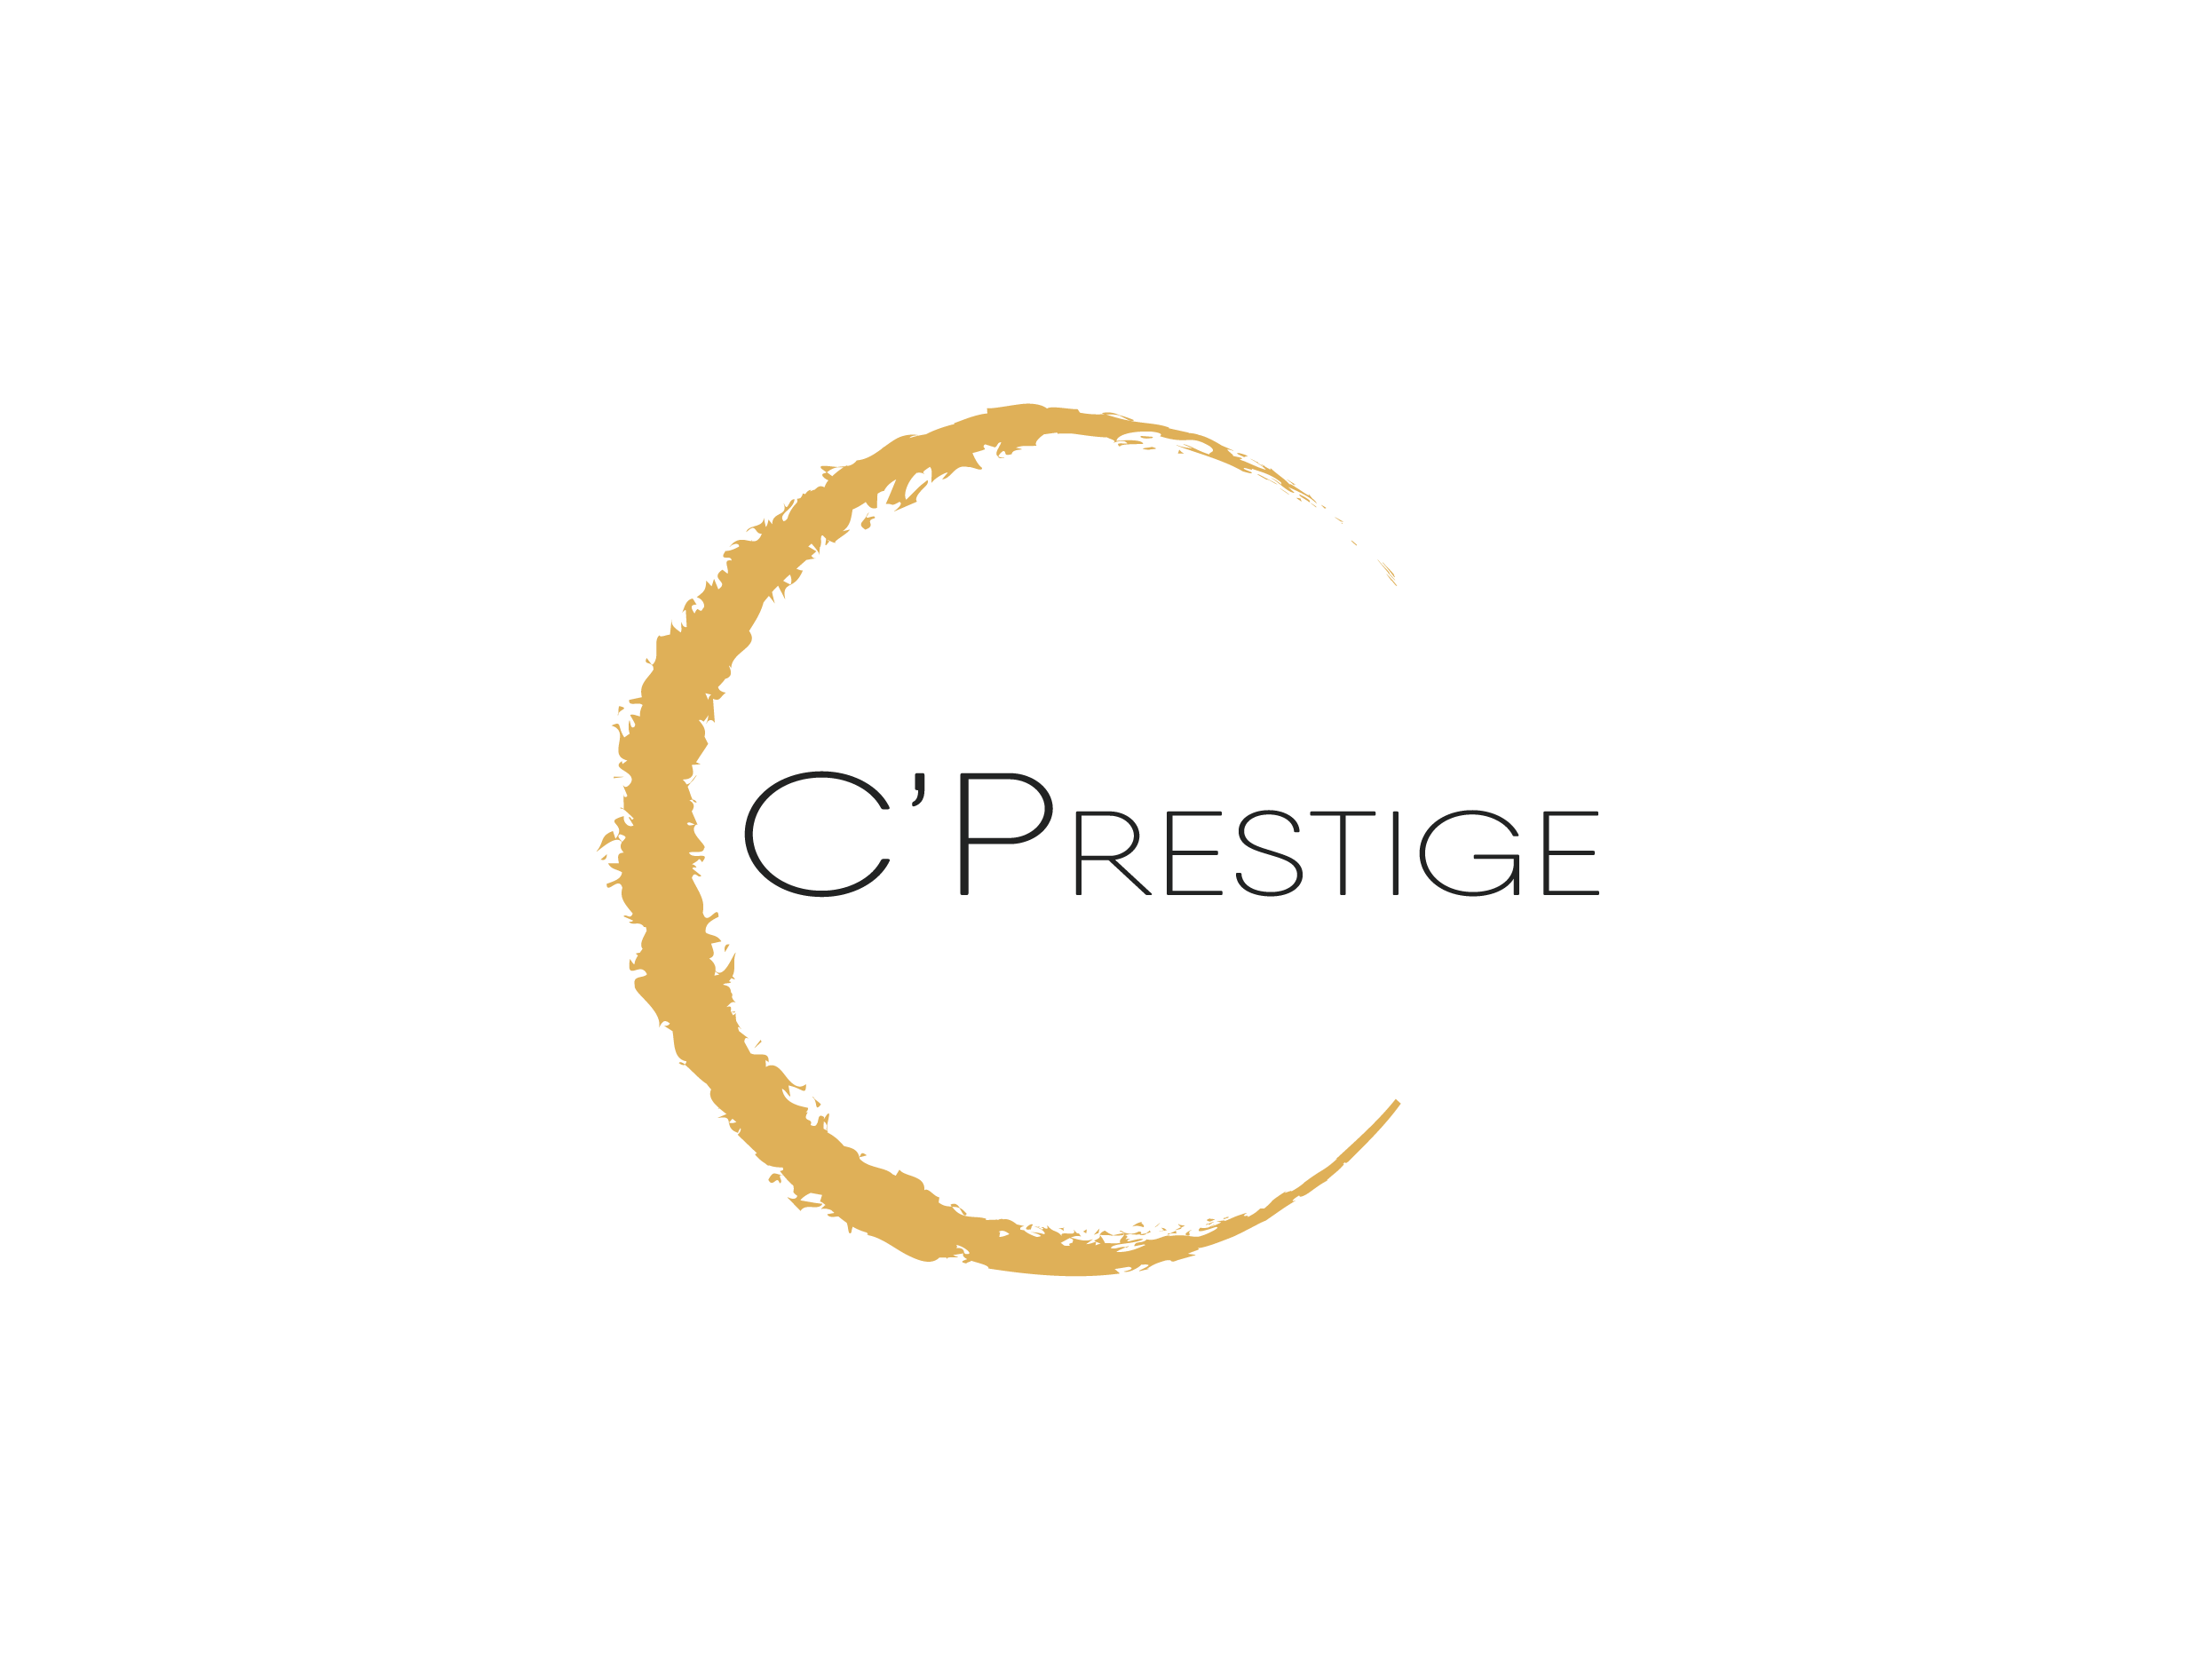 C’Prestige